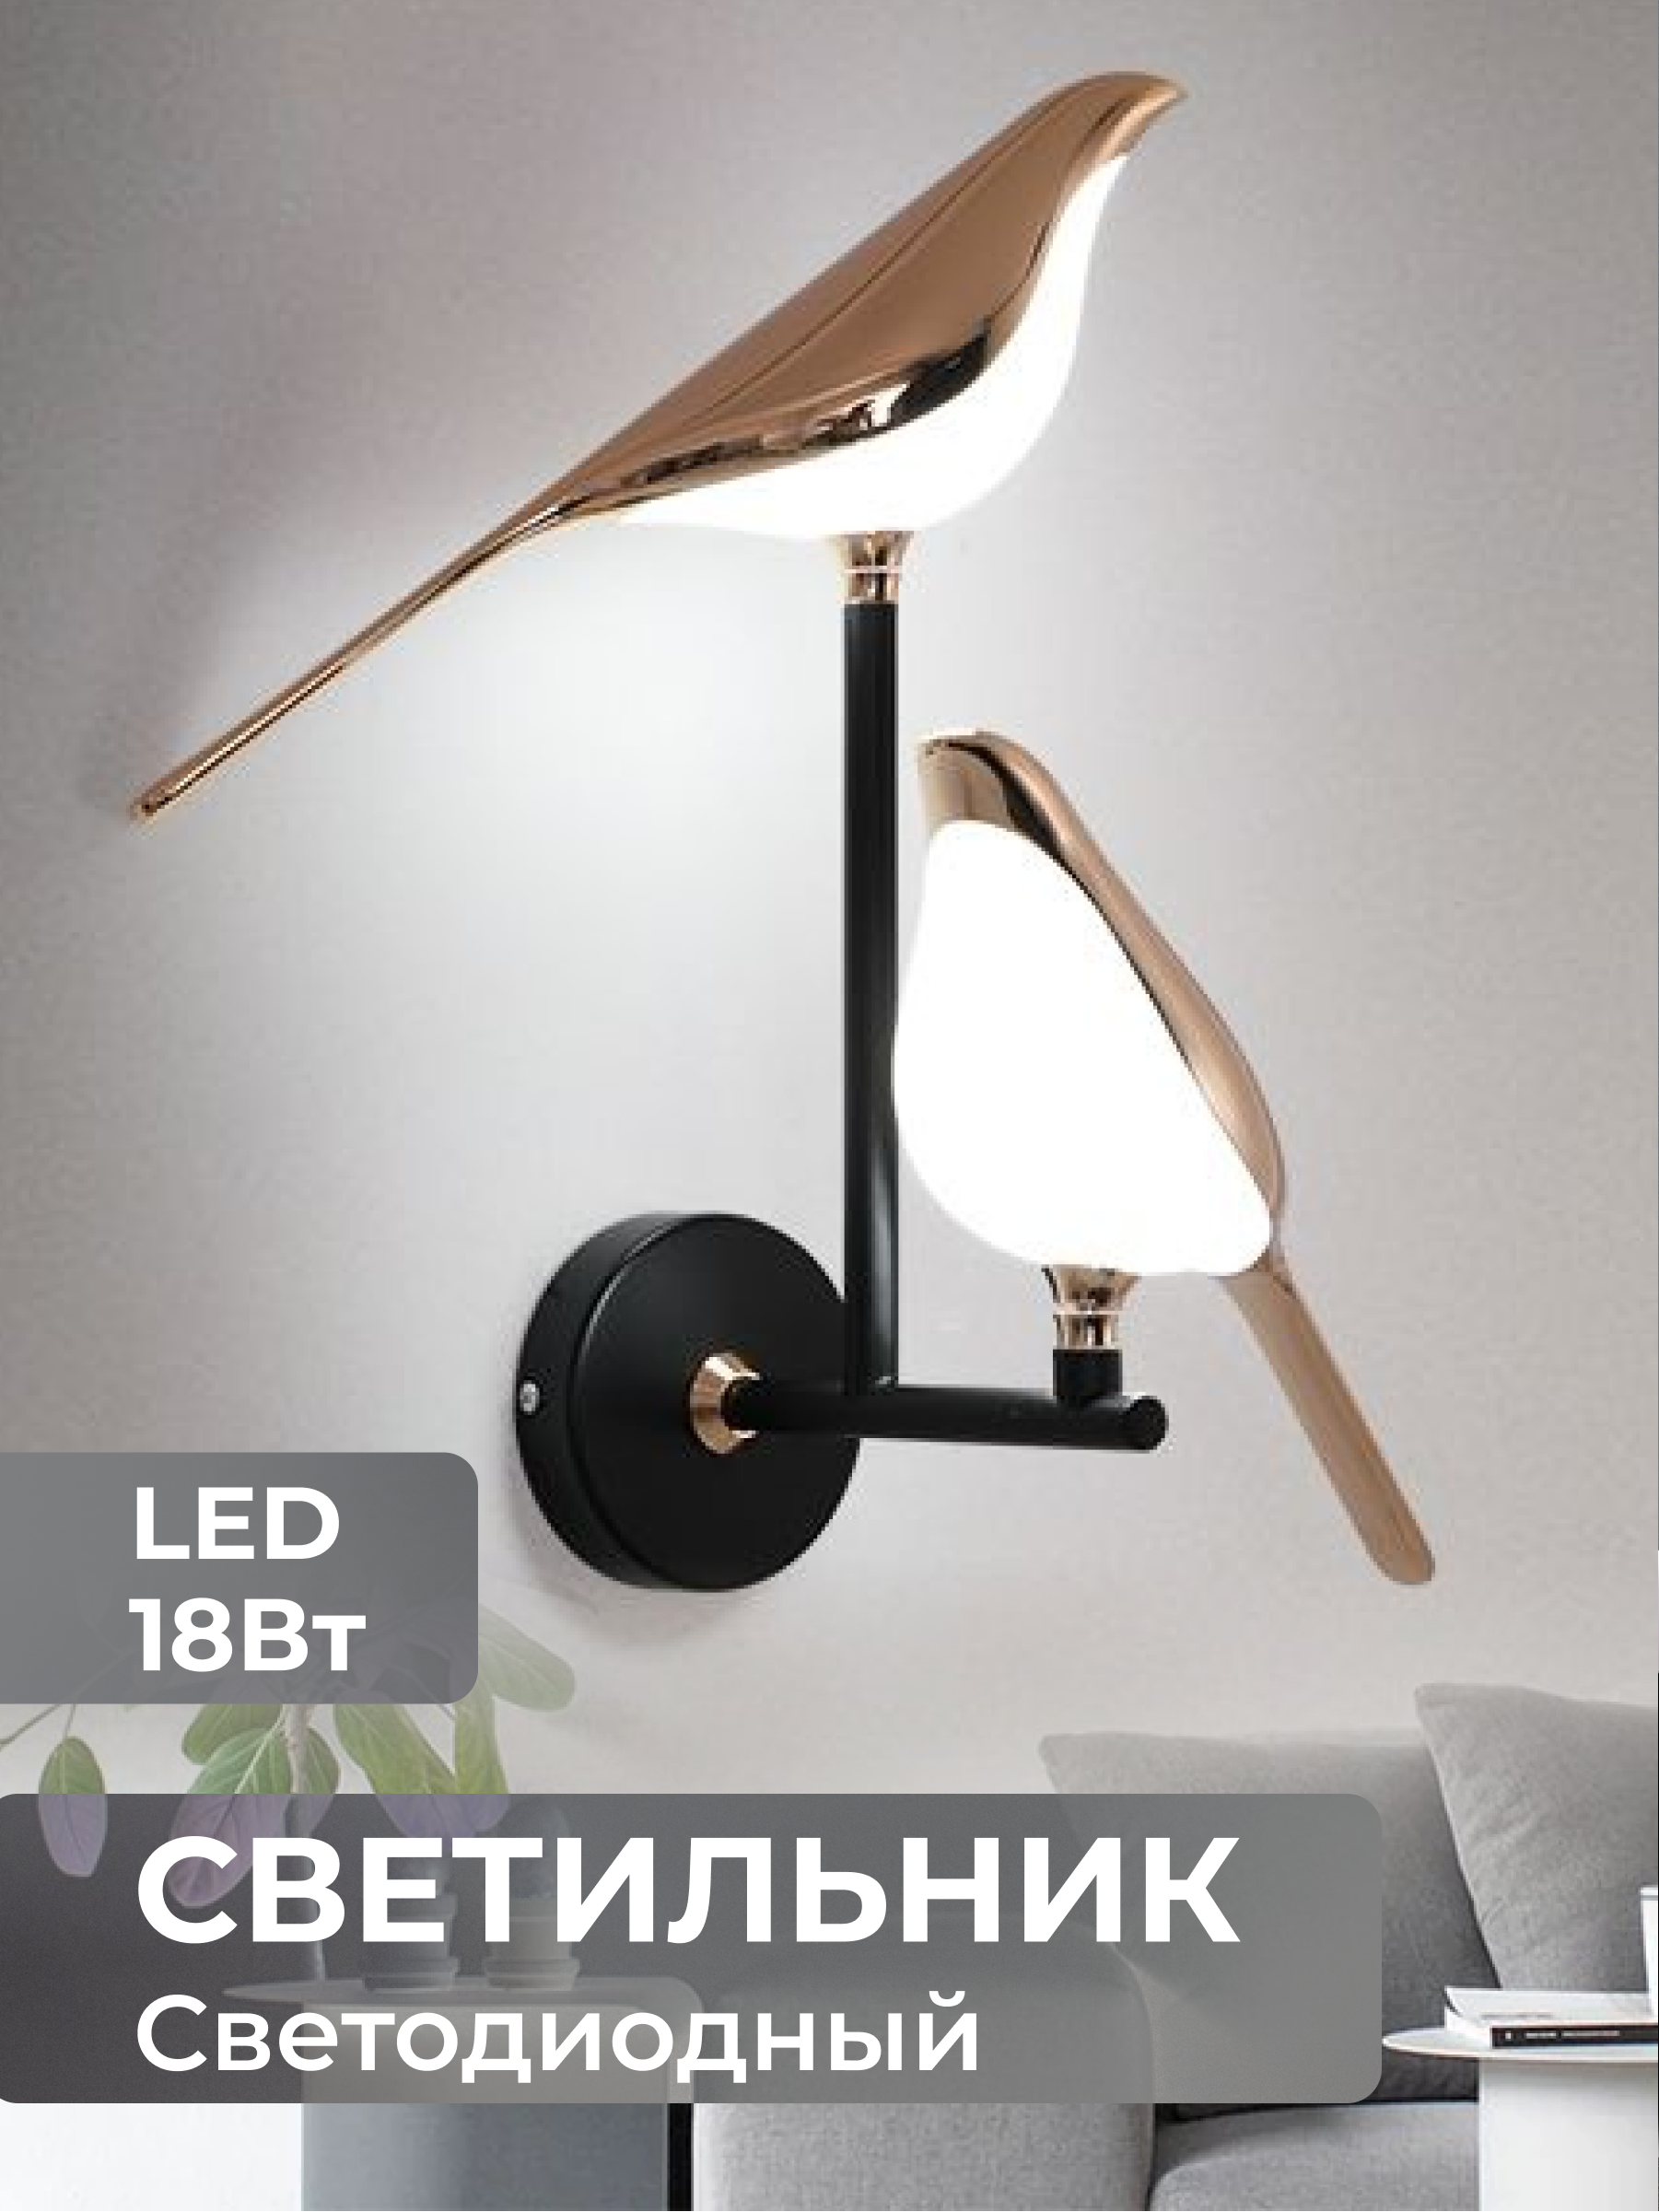 Светильник настенный светодиодный 2 птицы LED бра в спальню и гостиную  Lucterra LA123-2 купить за 4 032.00 руб в Санкт-Петербурге